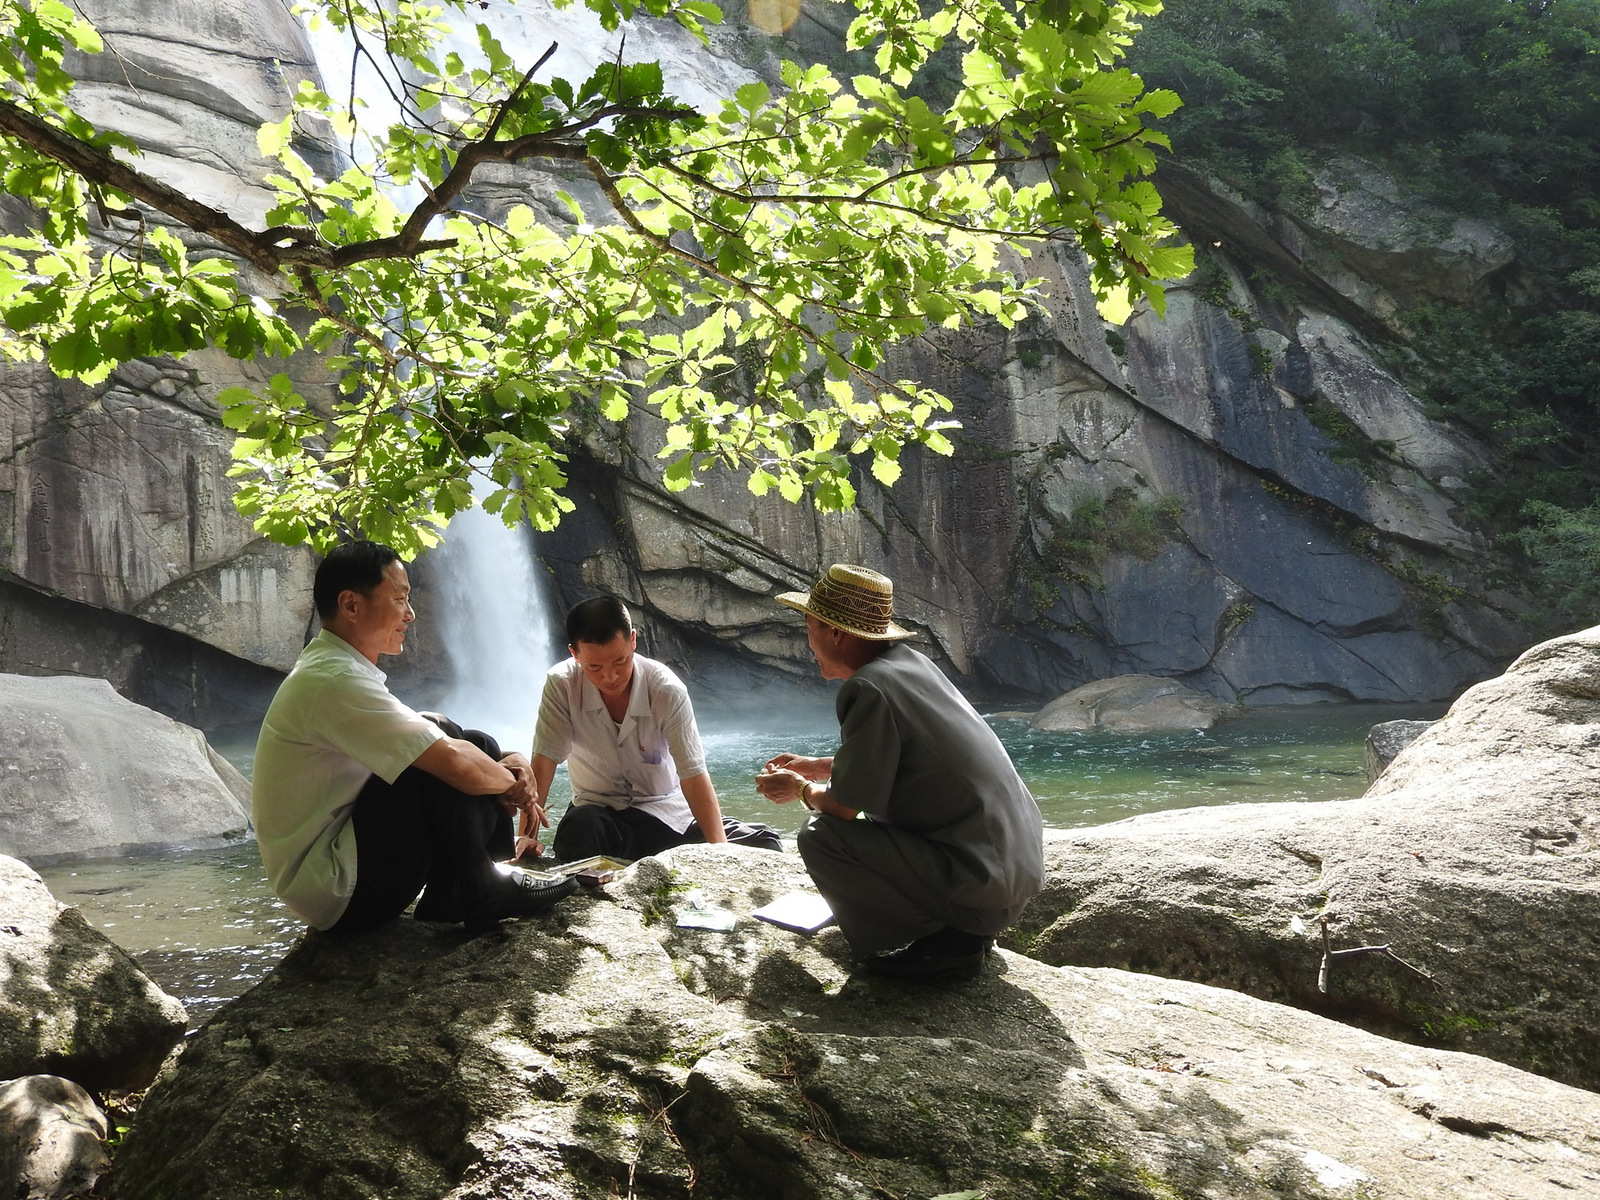 Las niñas jugaban en un charco de agua cerca de la cascada. Caminando a mi lado, uno sonrió a la cámara, el otro tímido.